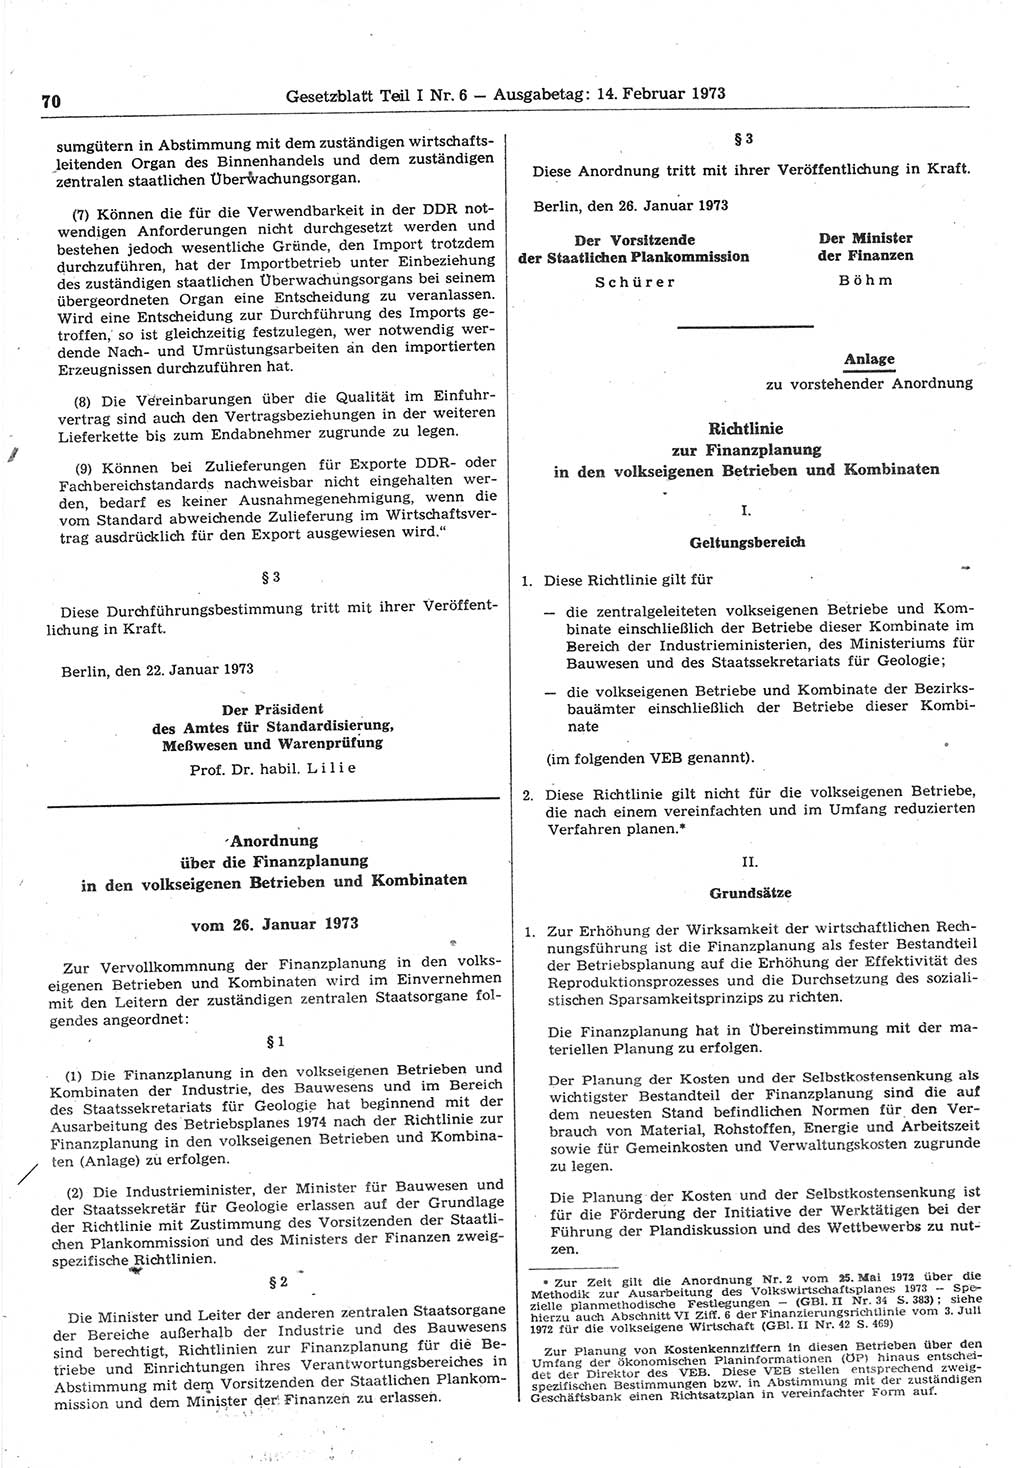 Gesetzblatt (GBl.) der Deutschen Demokratischen Republik (DDR) Teil Ⅰ 1973, Seite 70 (GBl. DDR Ⅰ 1973, S. 70)